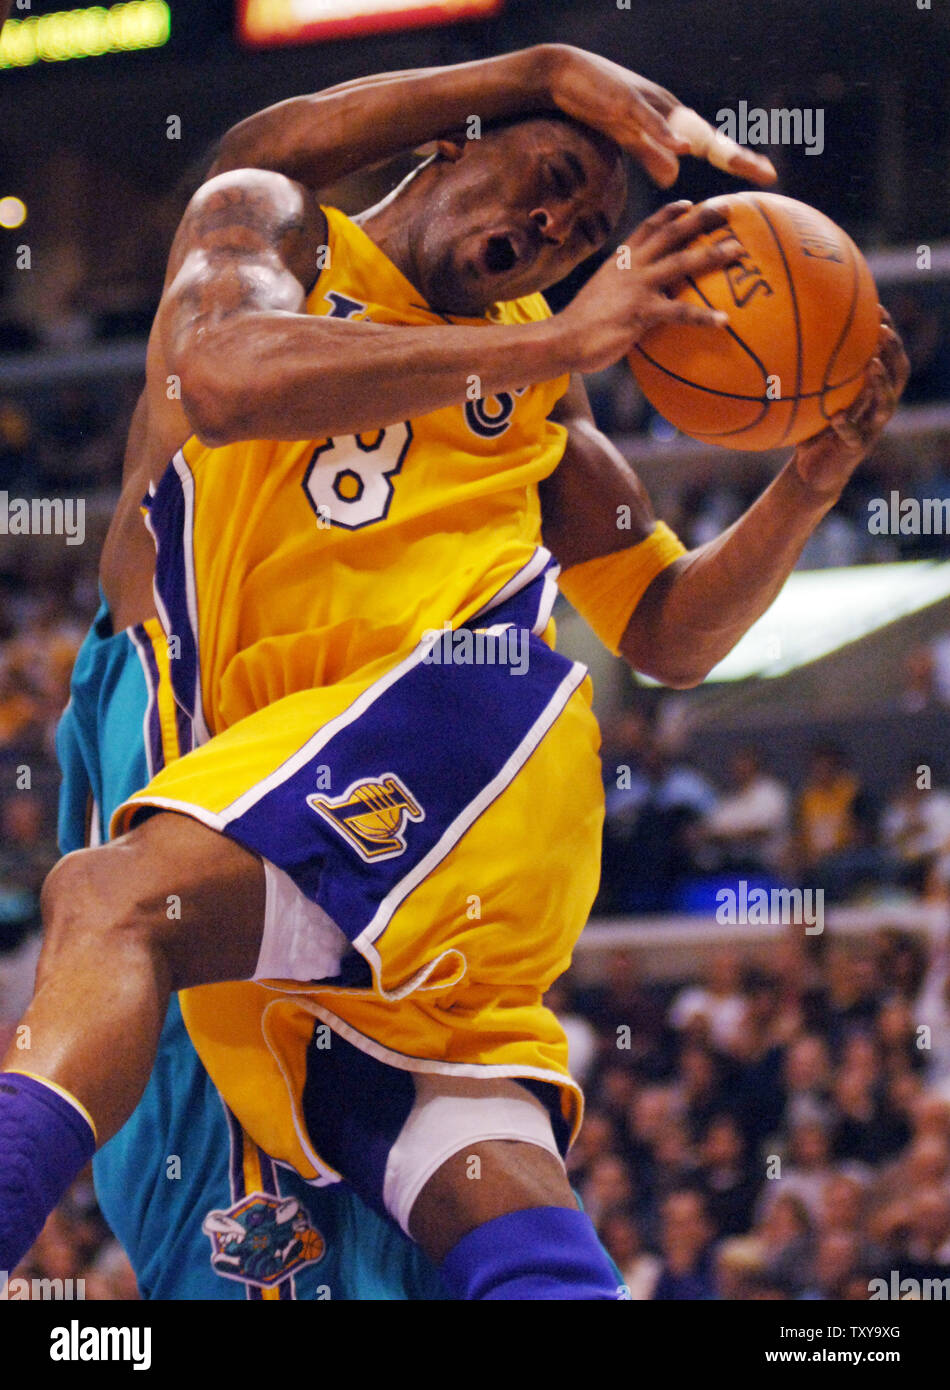 Kobe Bryant, Lakers roar back against Hornets